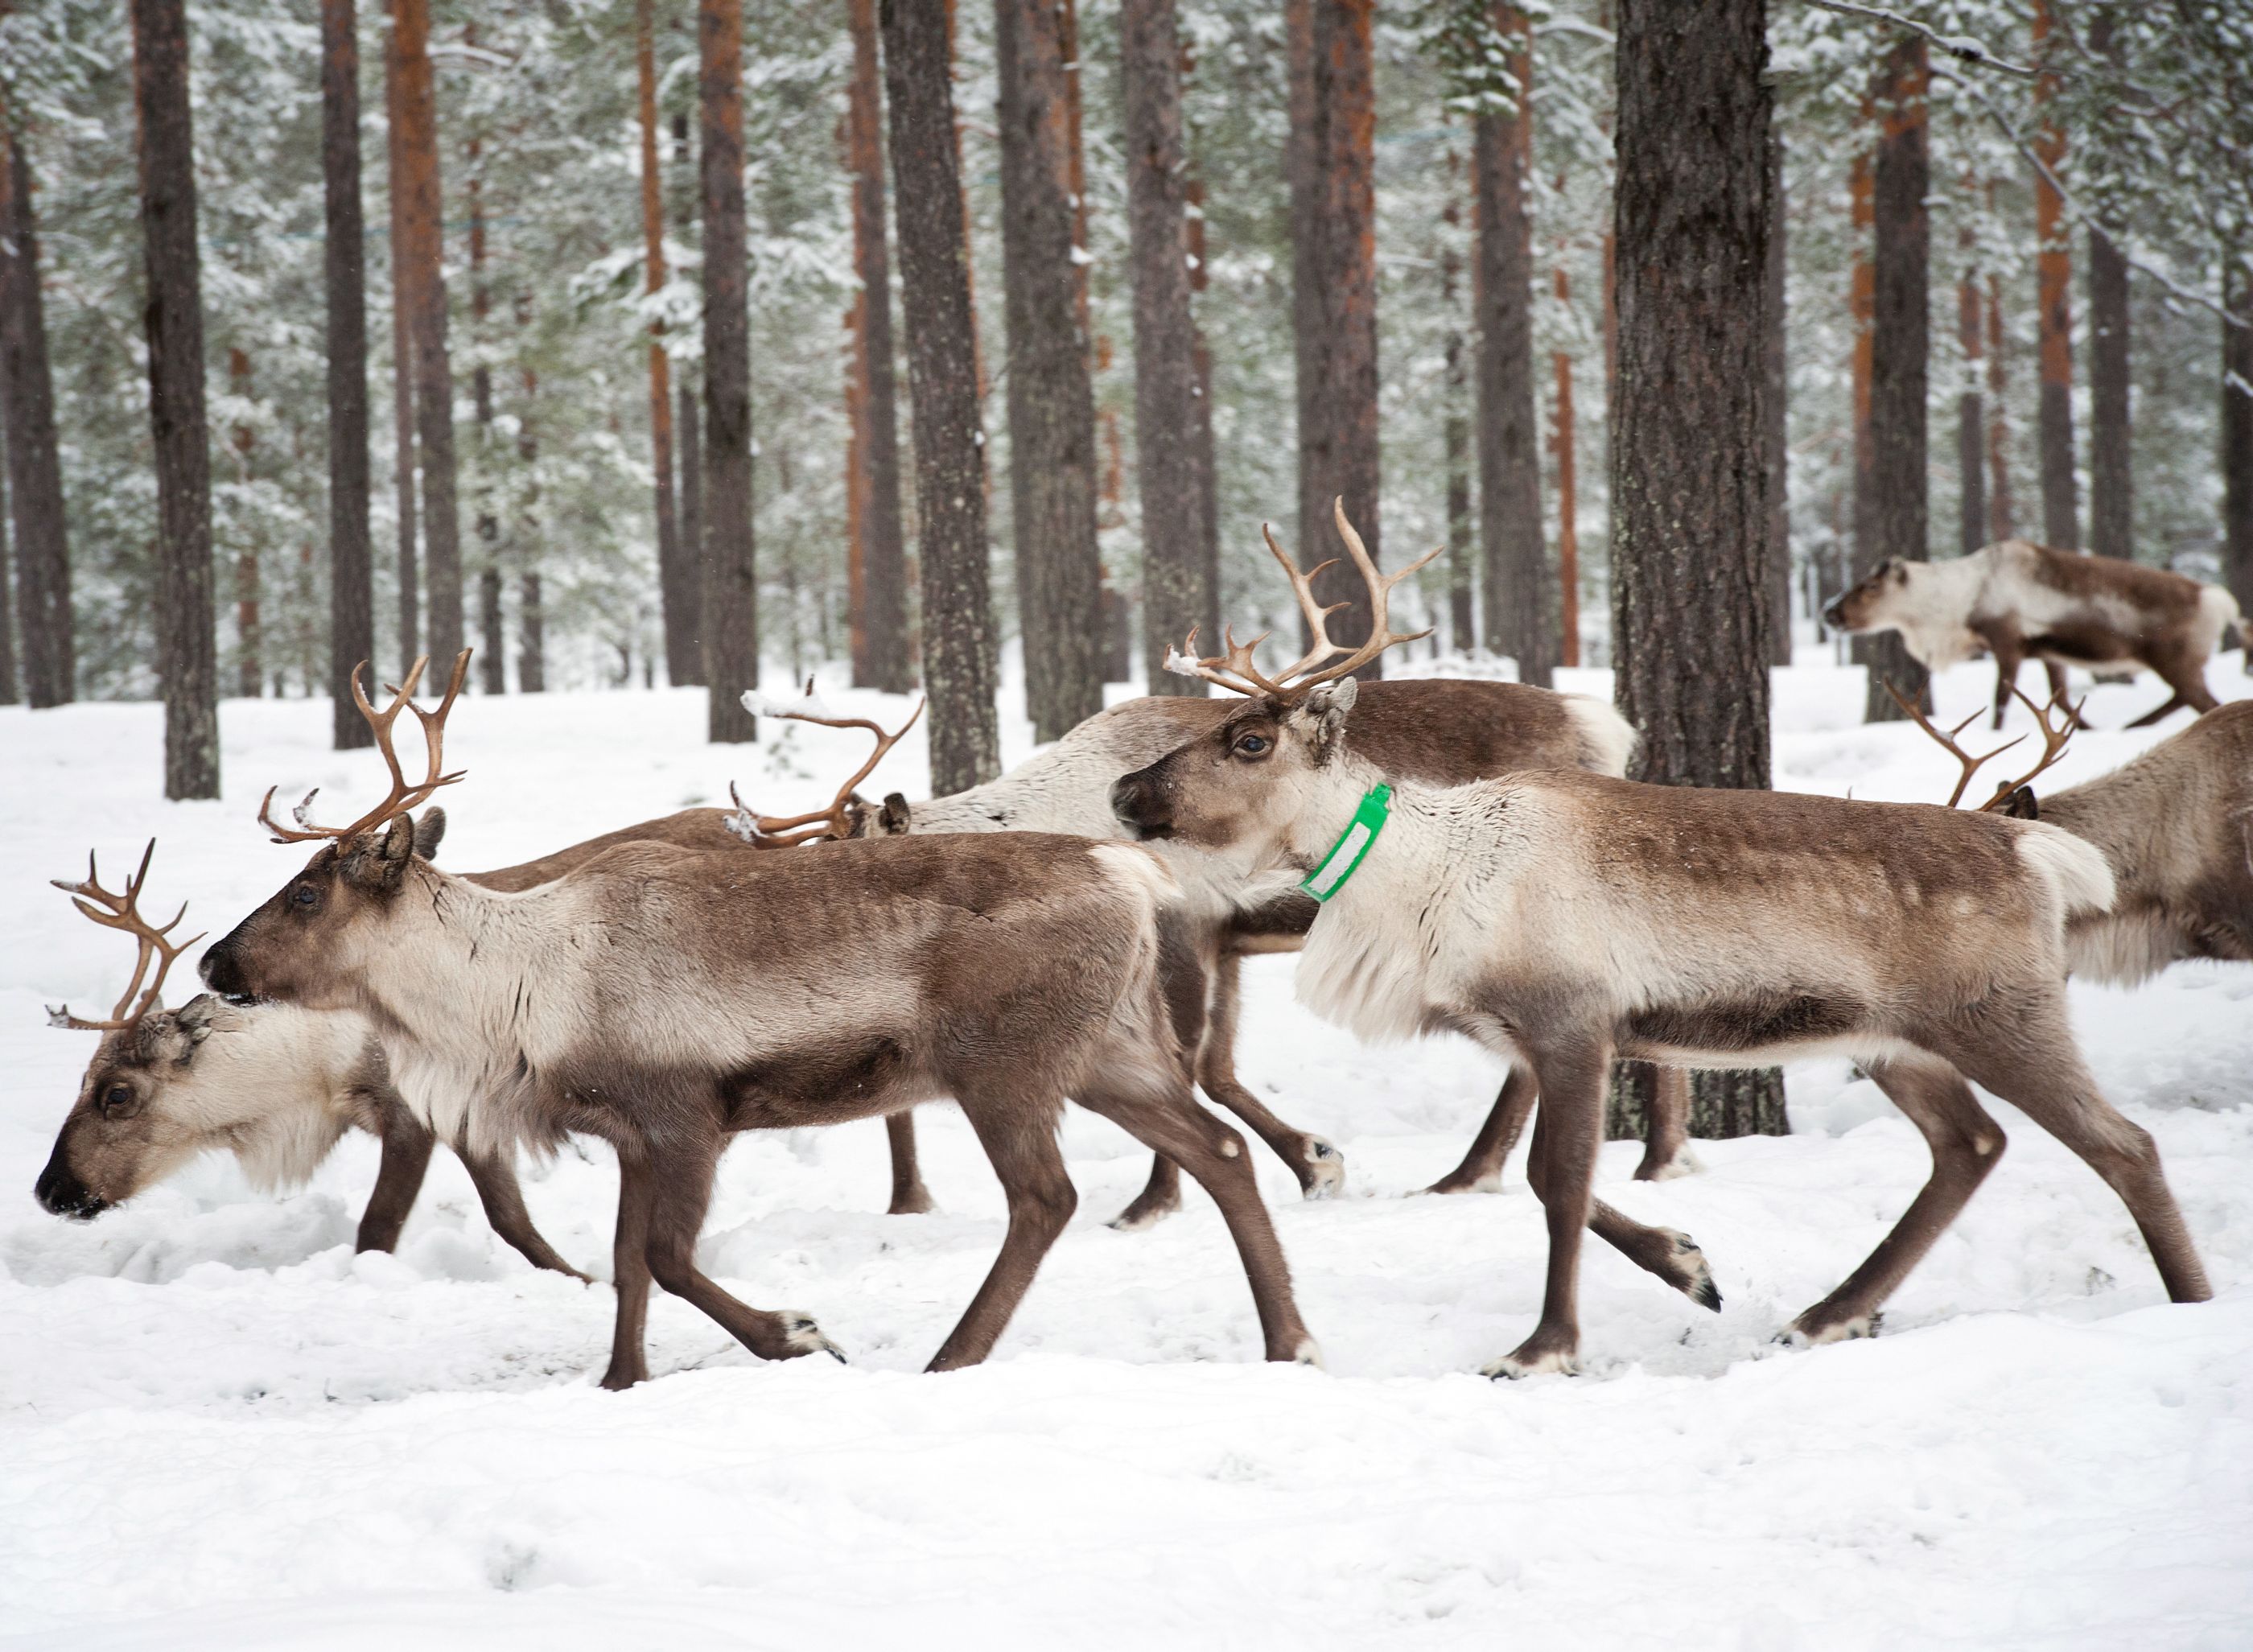 Reindeer in Sweden